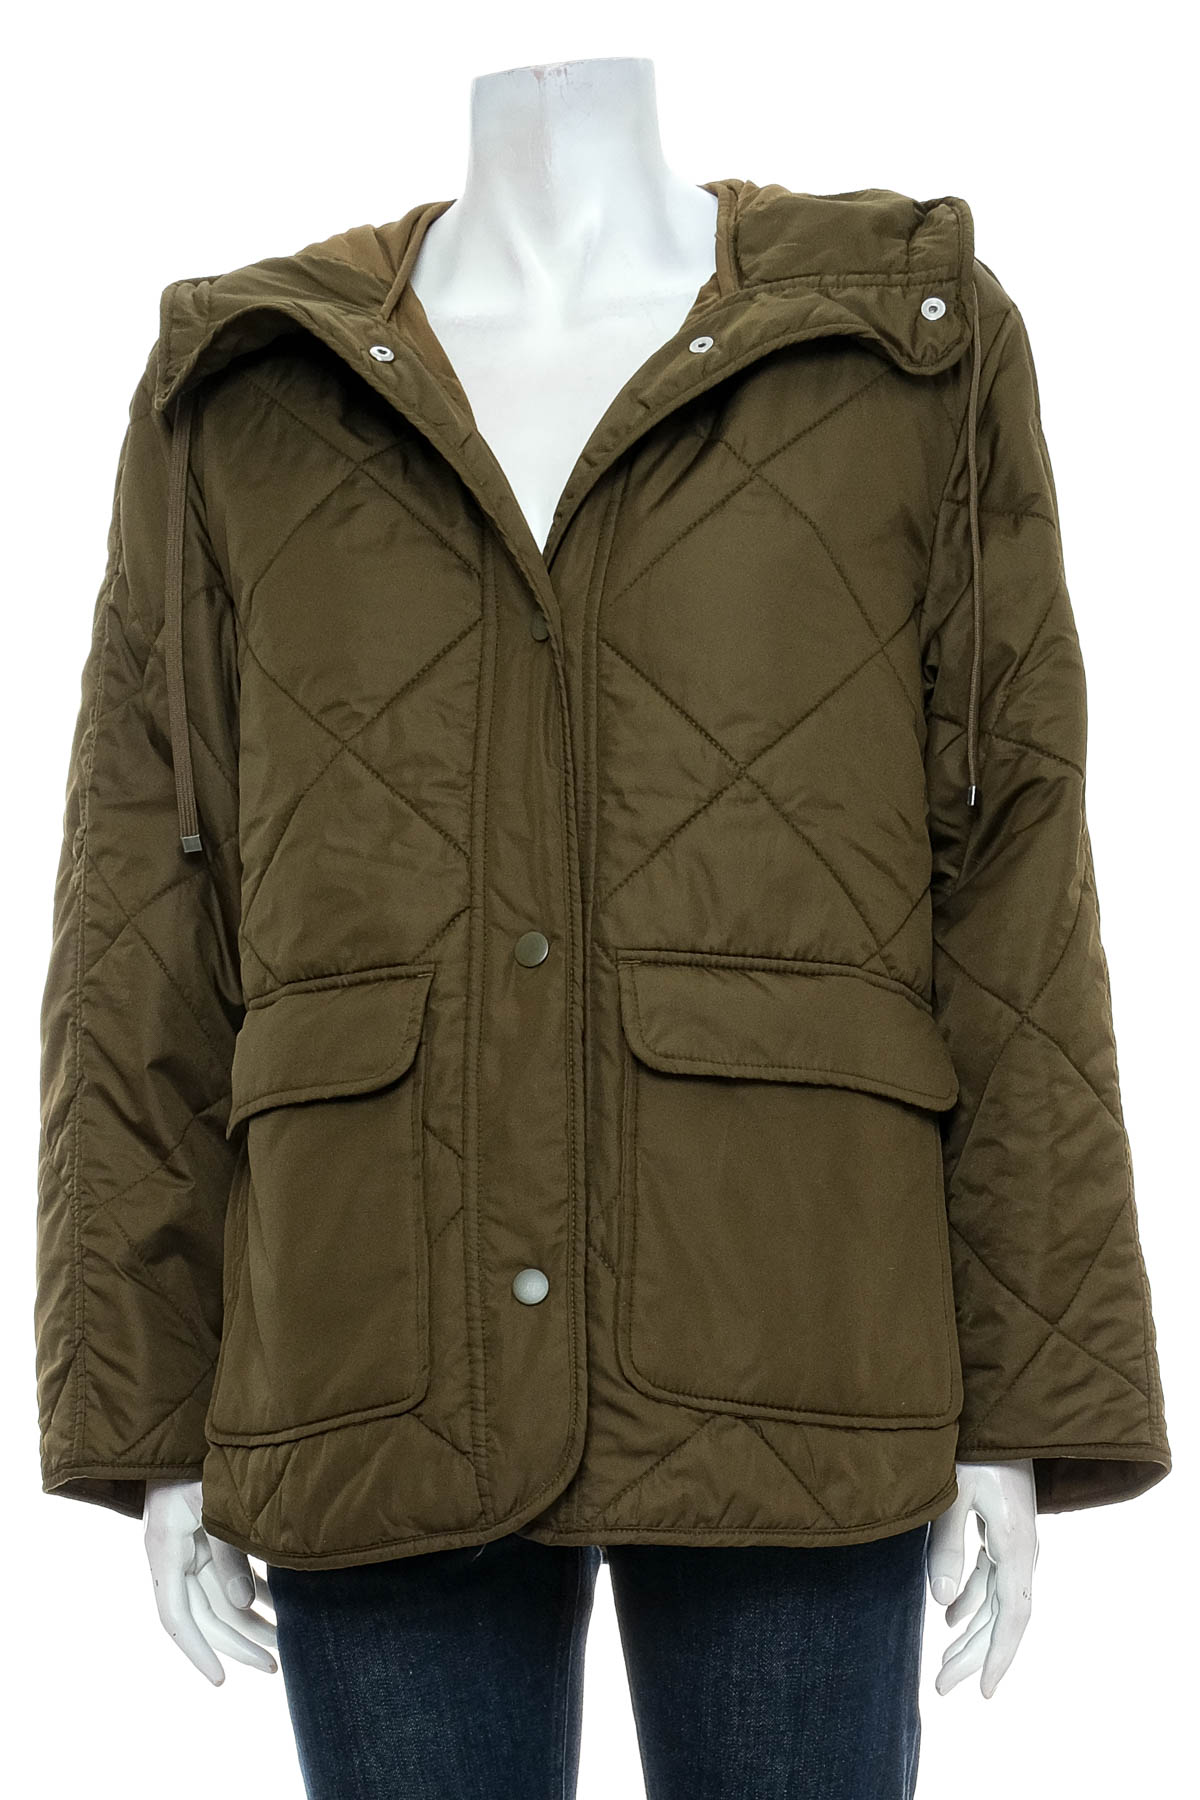 Female jacket - H&M - 0